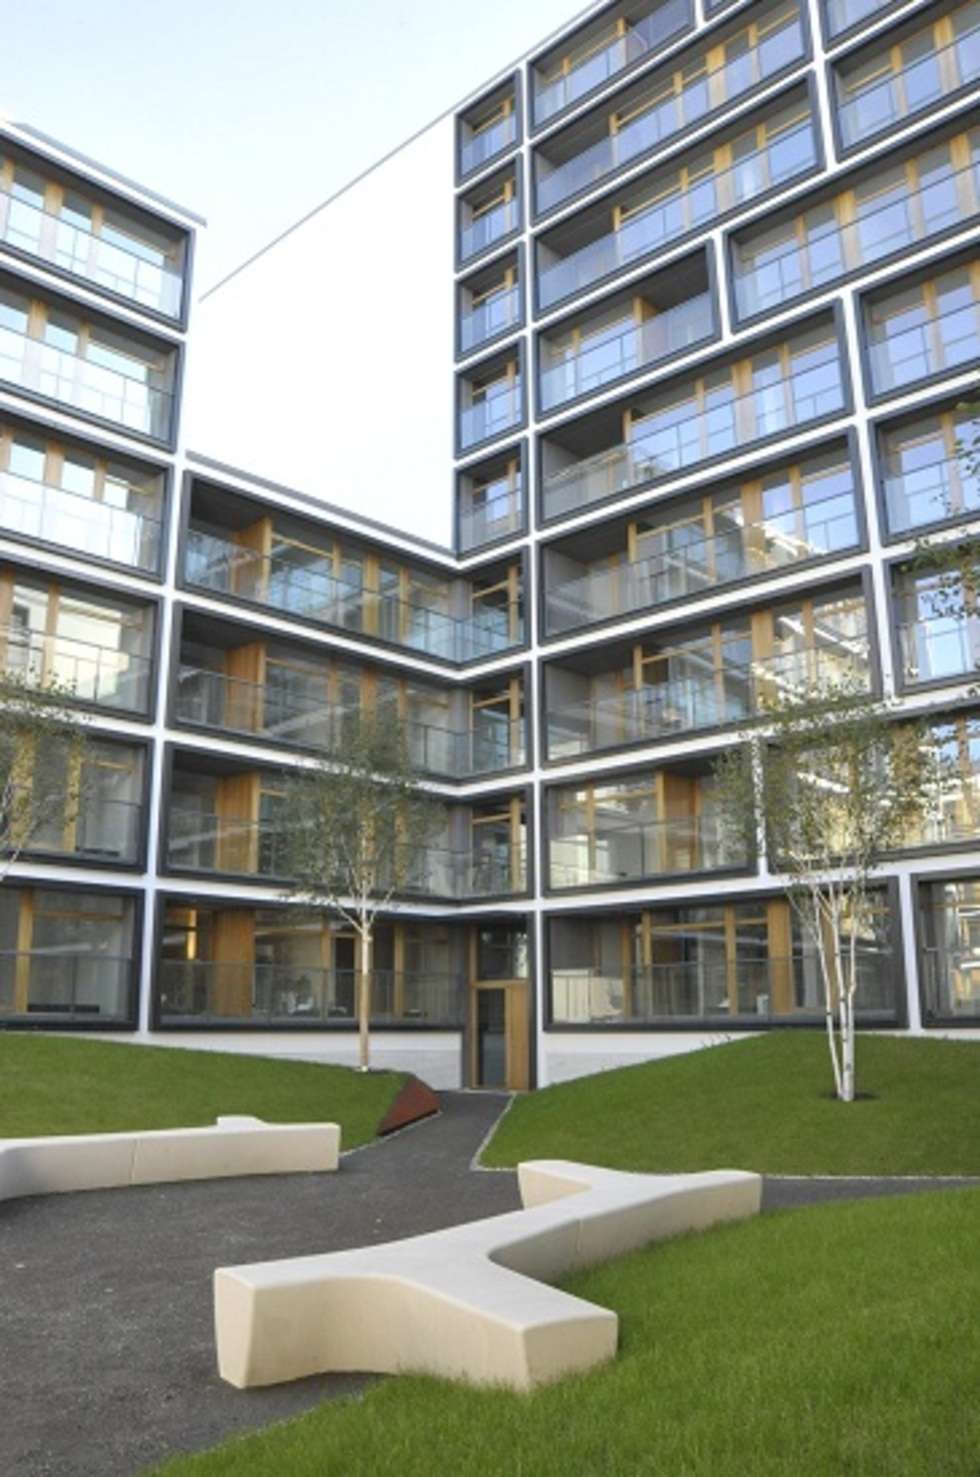  Za najlepszą realizację w kategorii 'Dom i mieszkanie' jurorzy uznali zespół mieszkaniowy 19 Dzielnica w Warszawie autorstwa biura JEMS Architekci